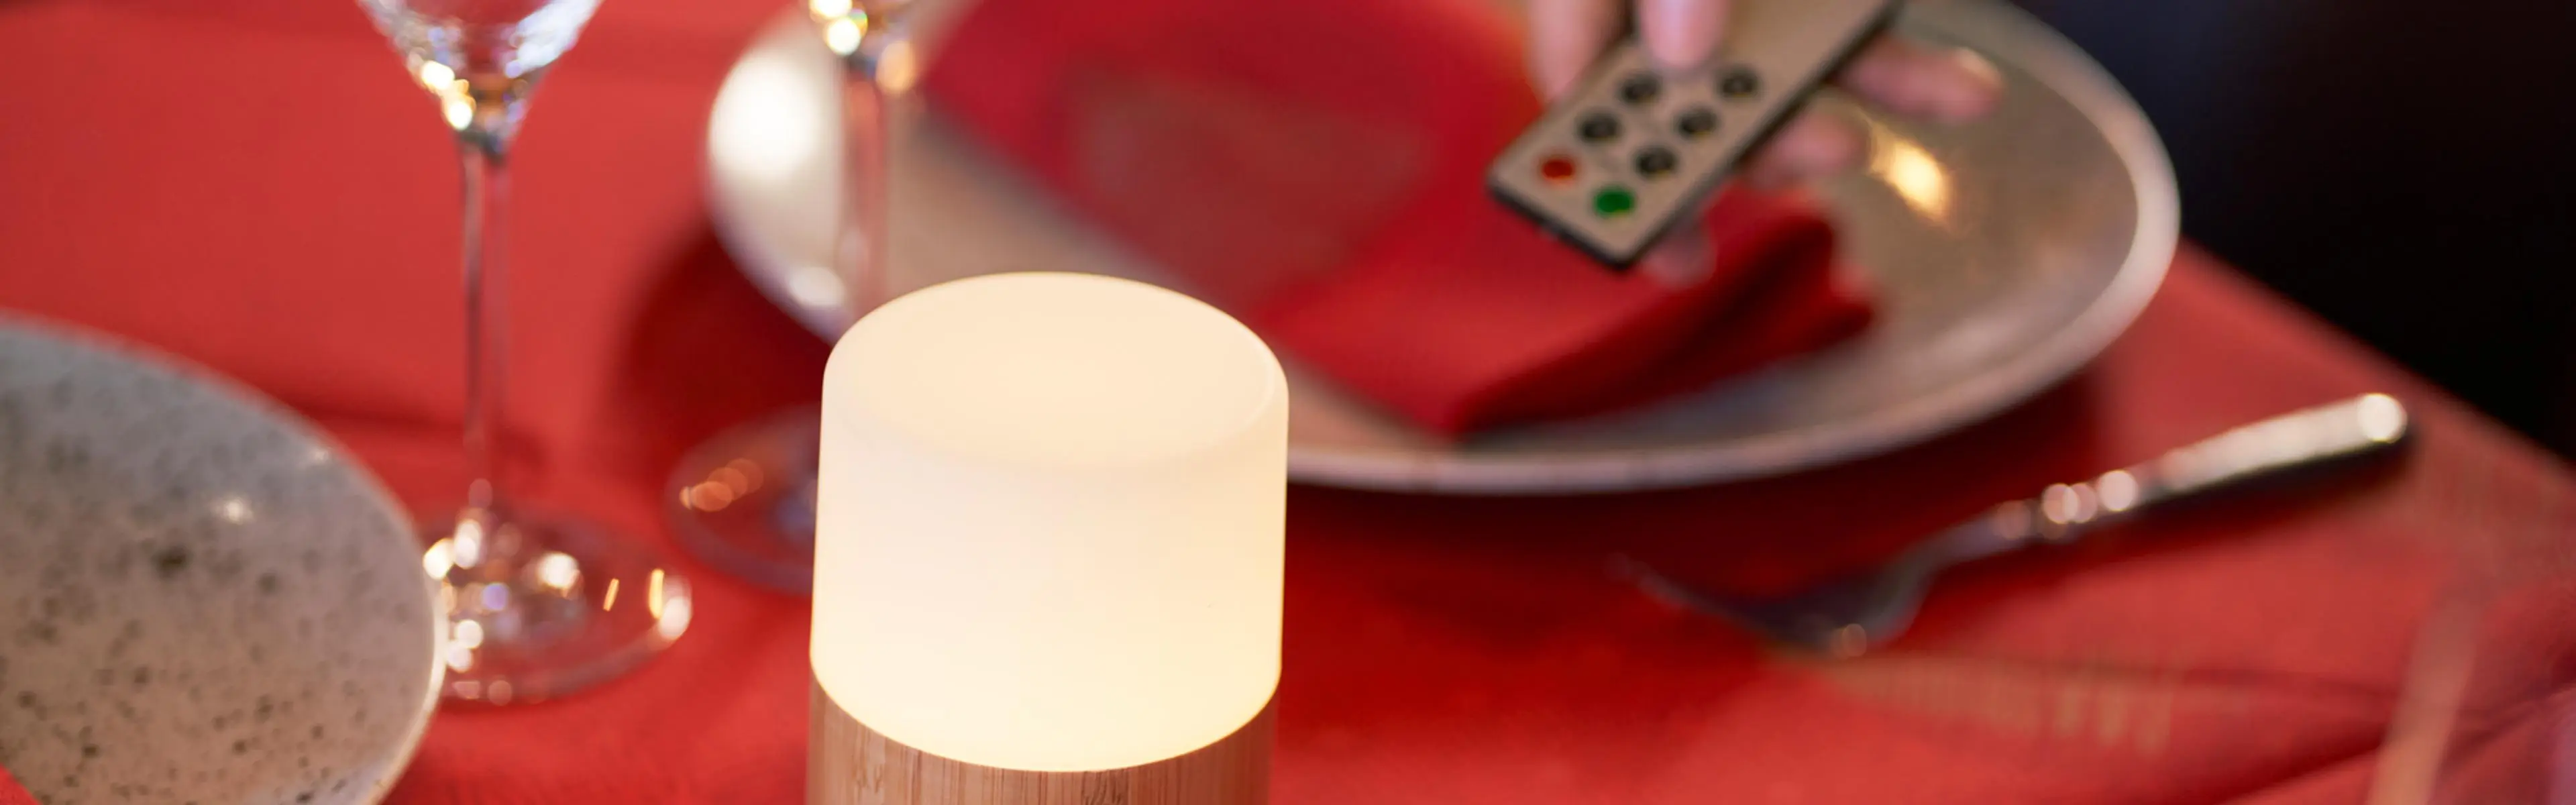 Duni LED-lys i bruk på restaurant